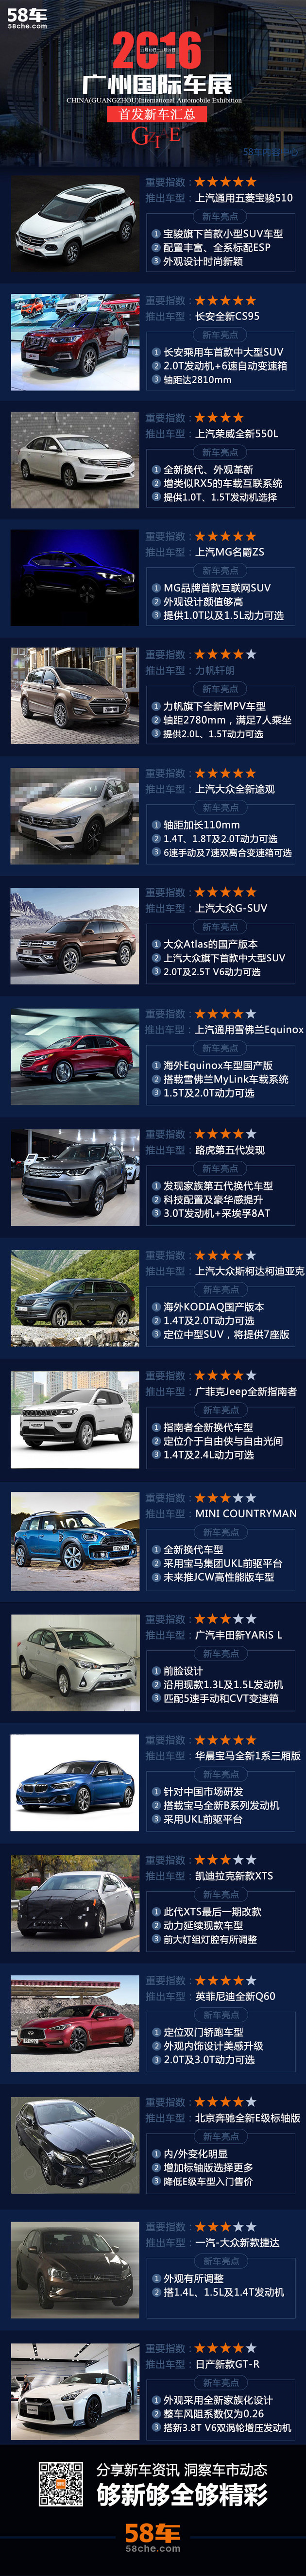 2016广州车展抢先看 一张图看遍新车